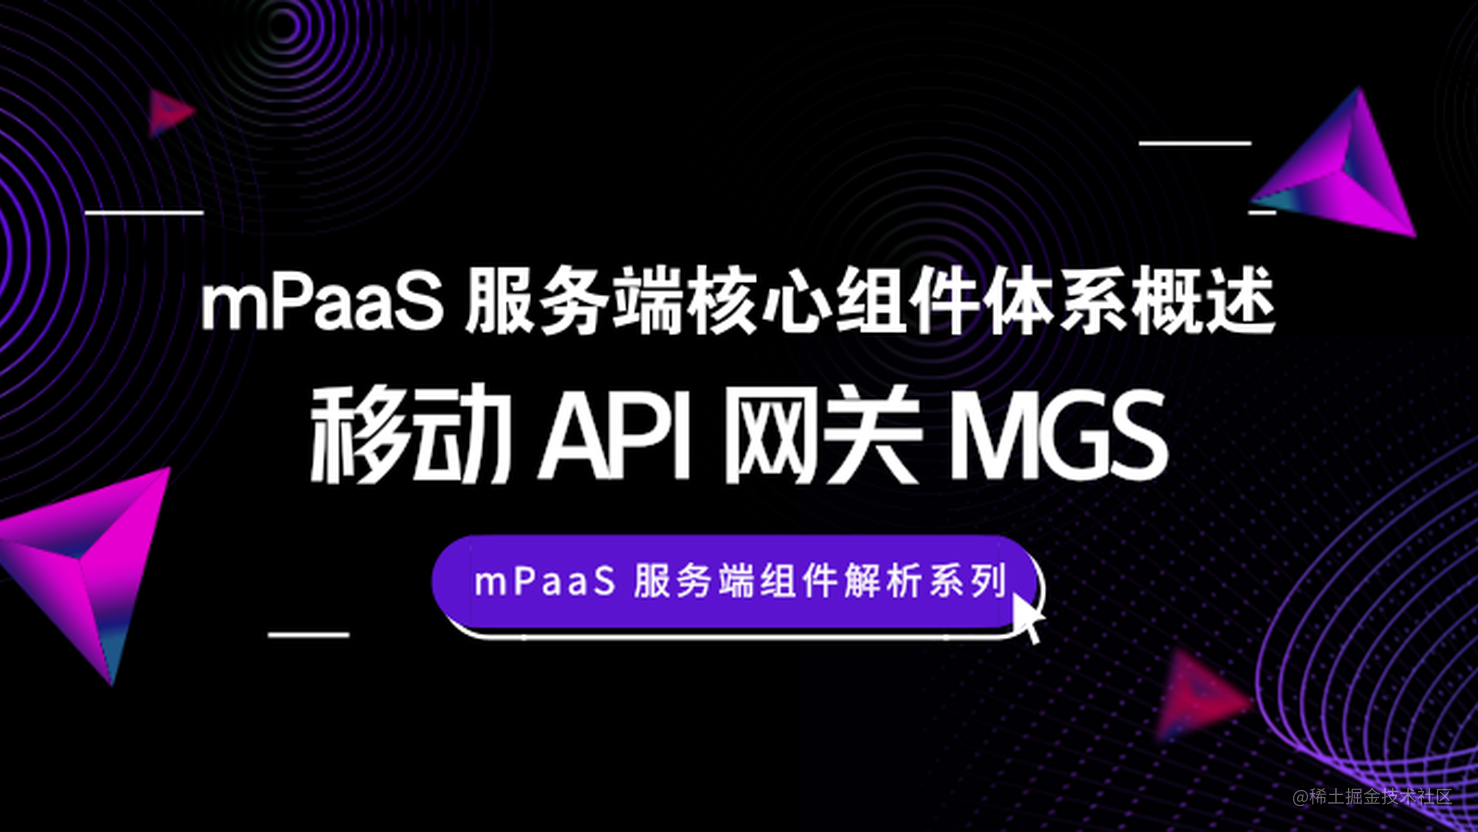 蚂蚁金服 mPaaS 服务端核心组件体系概述：移动 API 网关 MGS